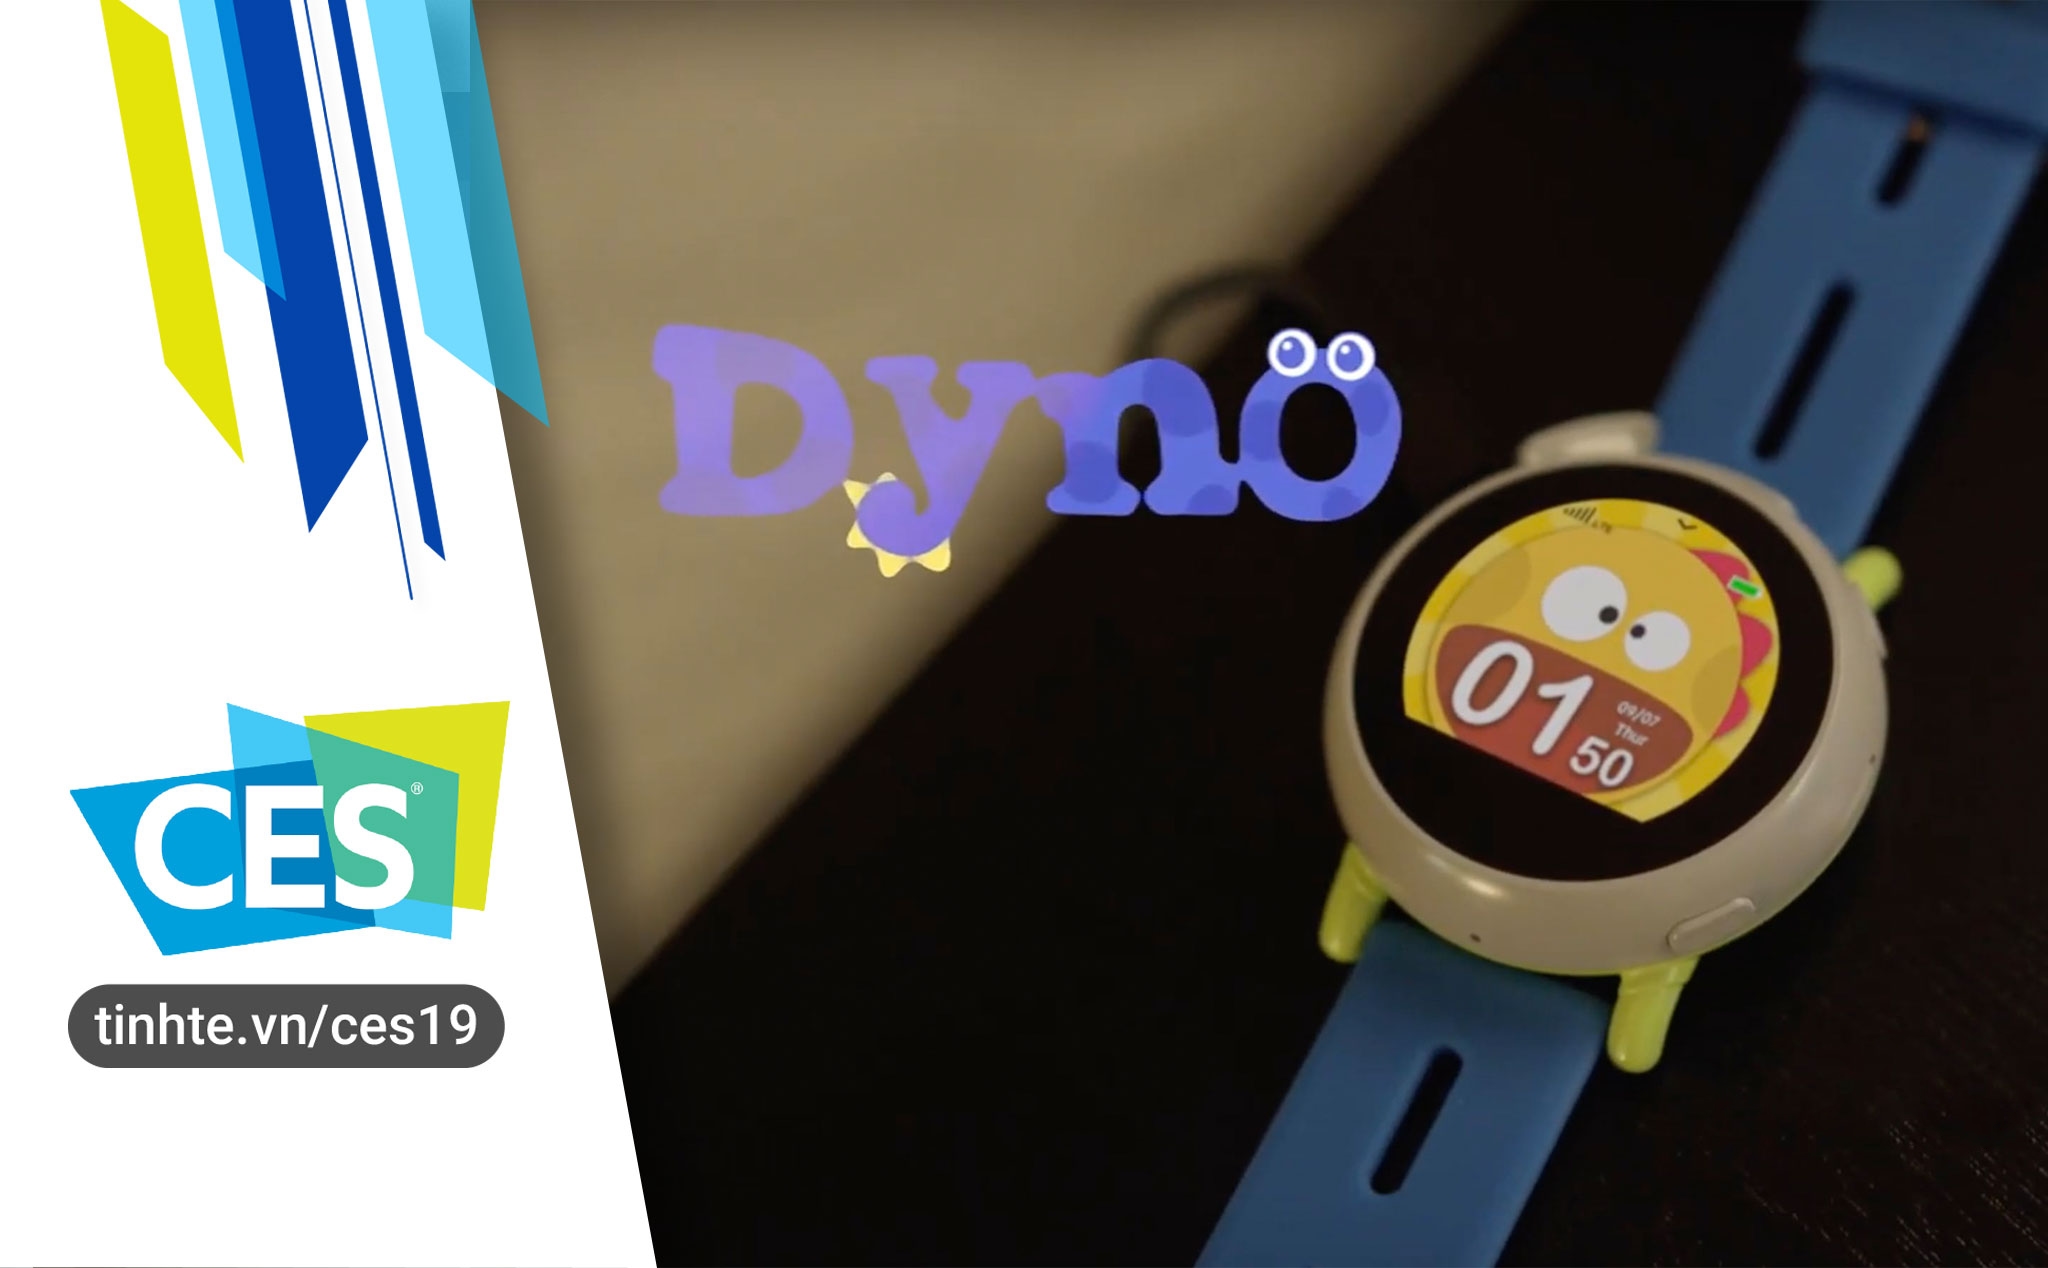 #CES19: Dyno, đồng hồ thông minh giúp phụ huynh quản lý con cái, giá $149